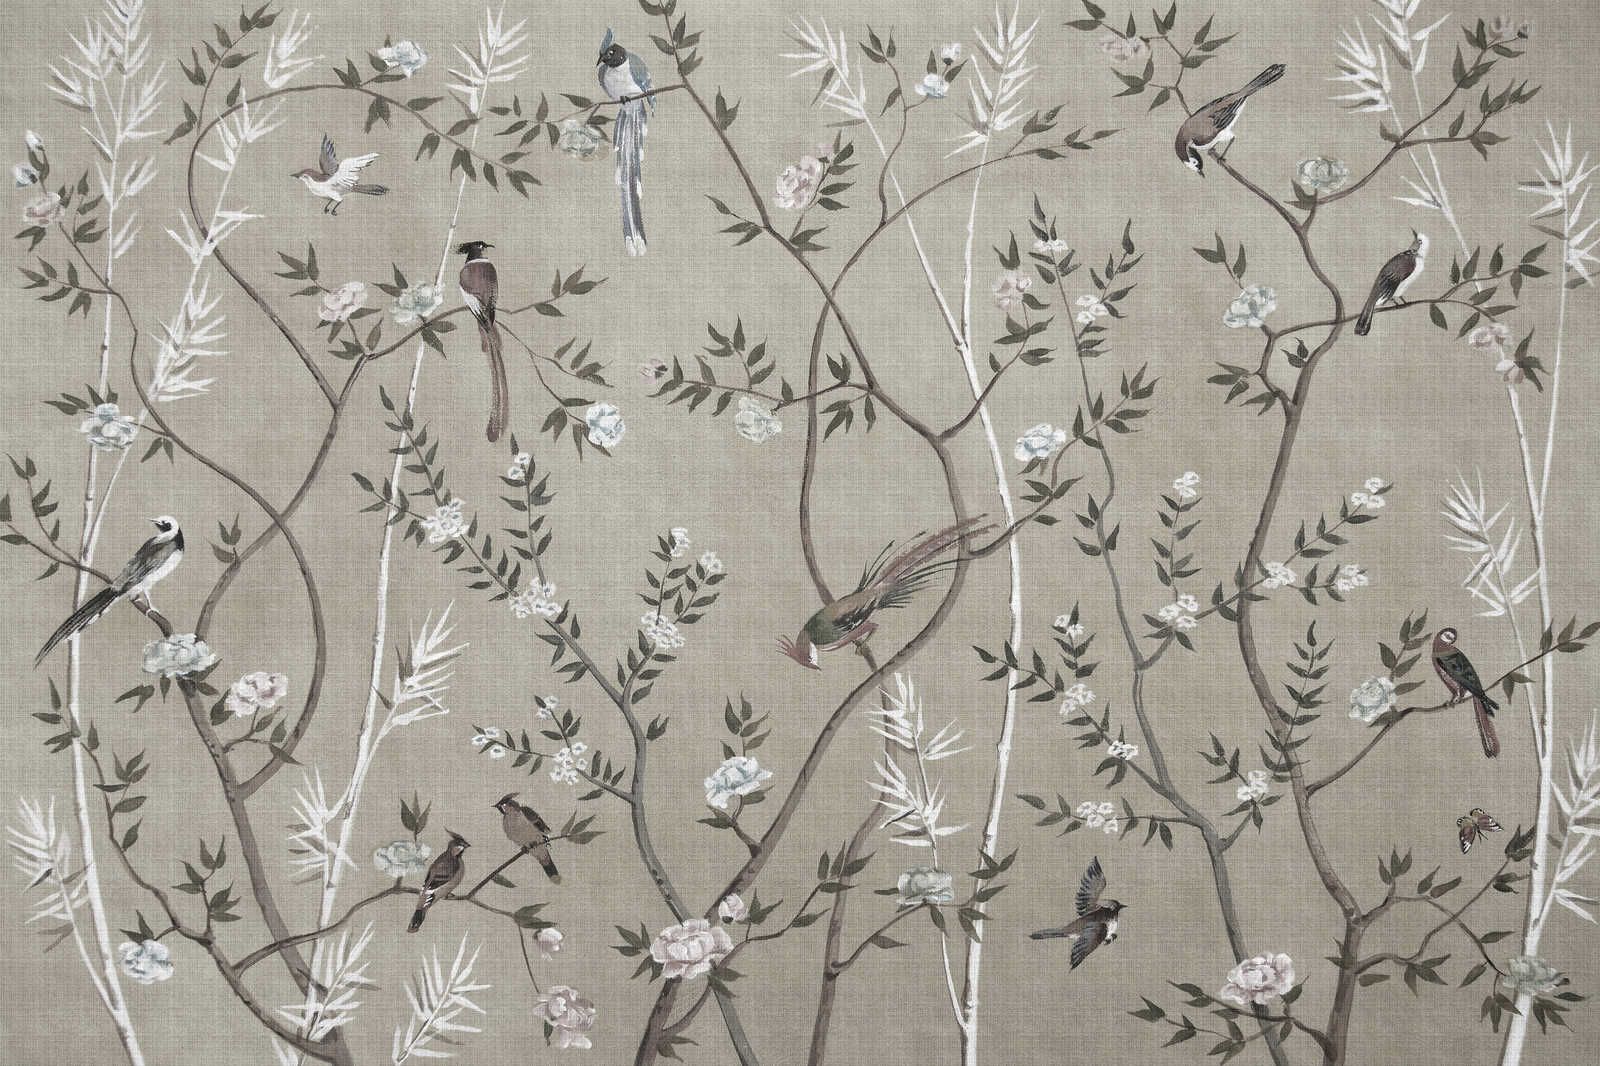             Tea Room 2 - Leinwandbild Vögel & Blüten Design in Greige – 0,90 m x 0,60 m
        